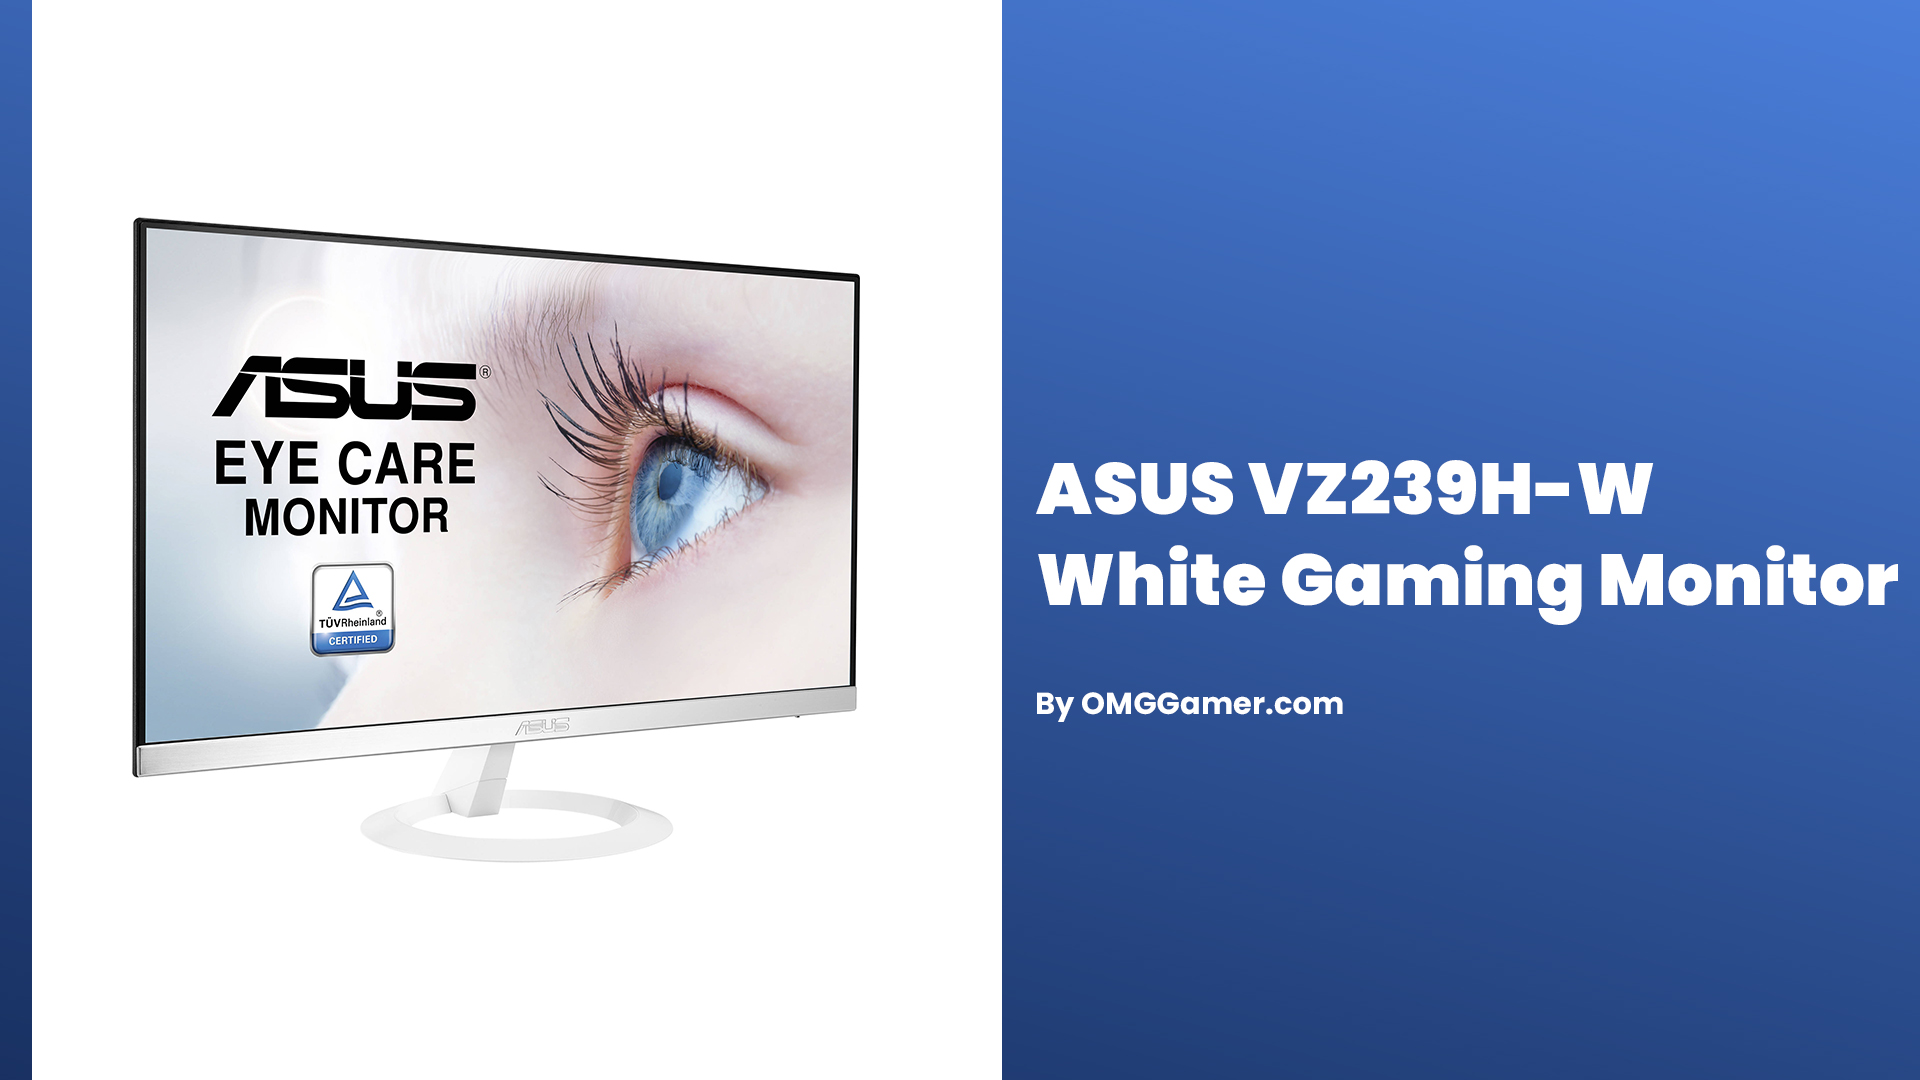 ASUS VZ239H-W White Gaming Monitor